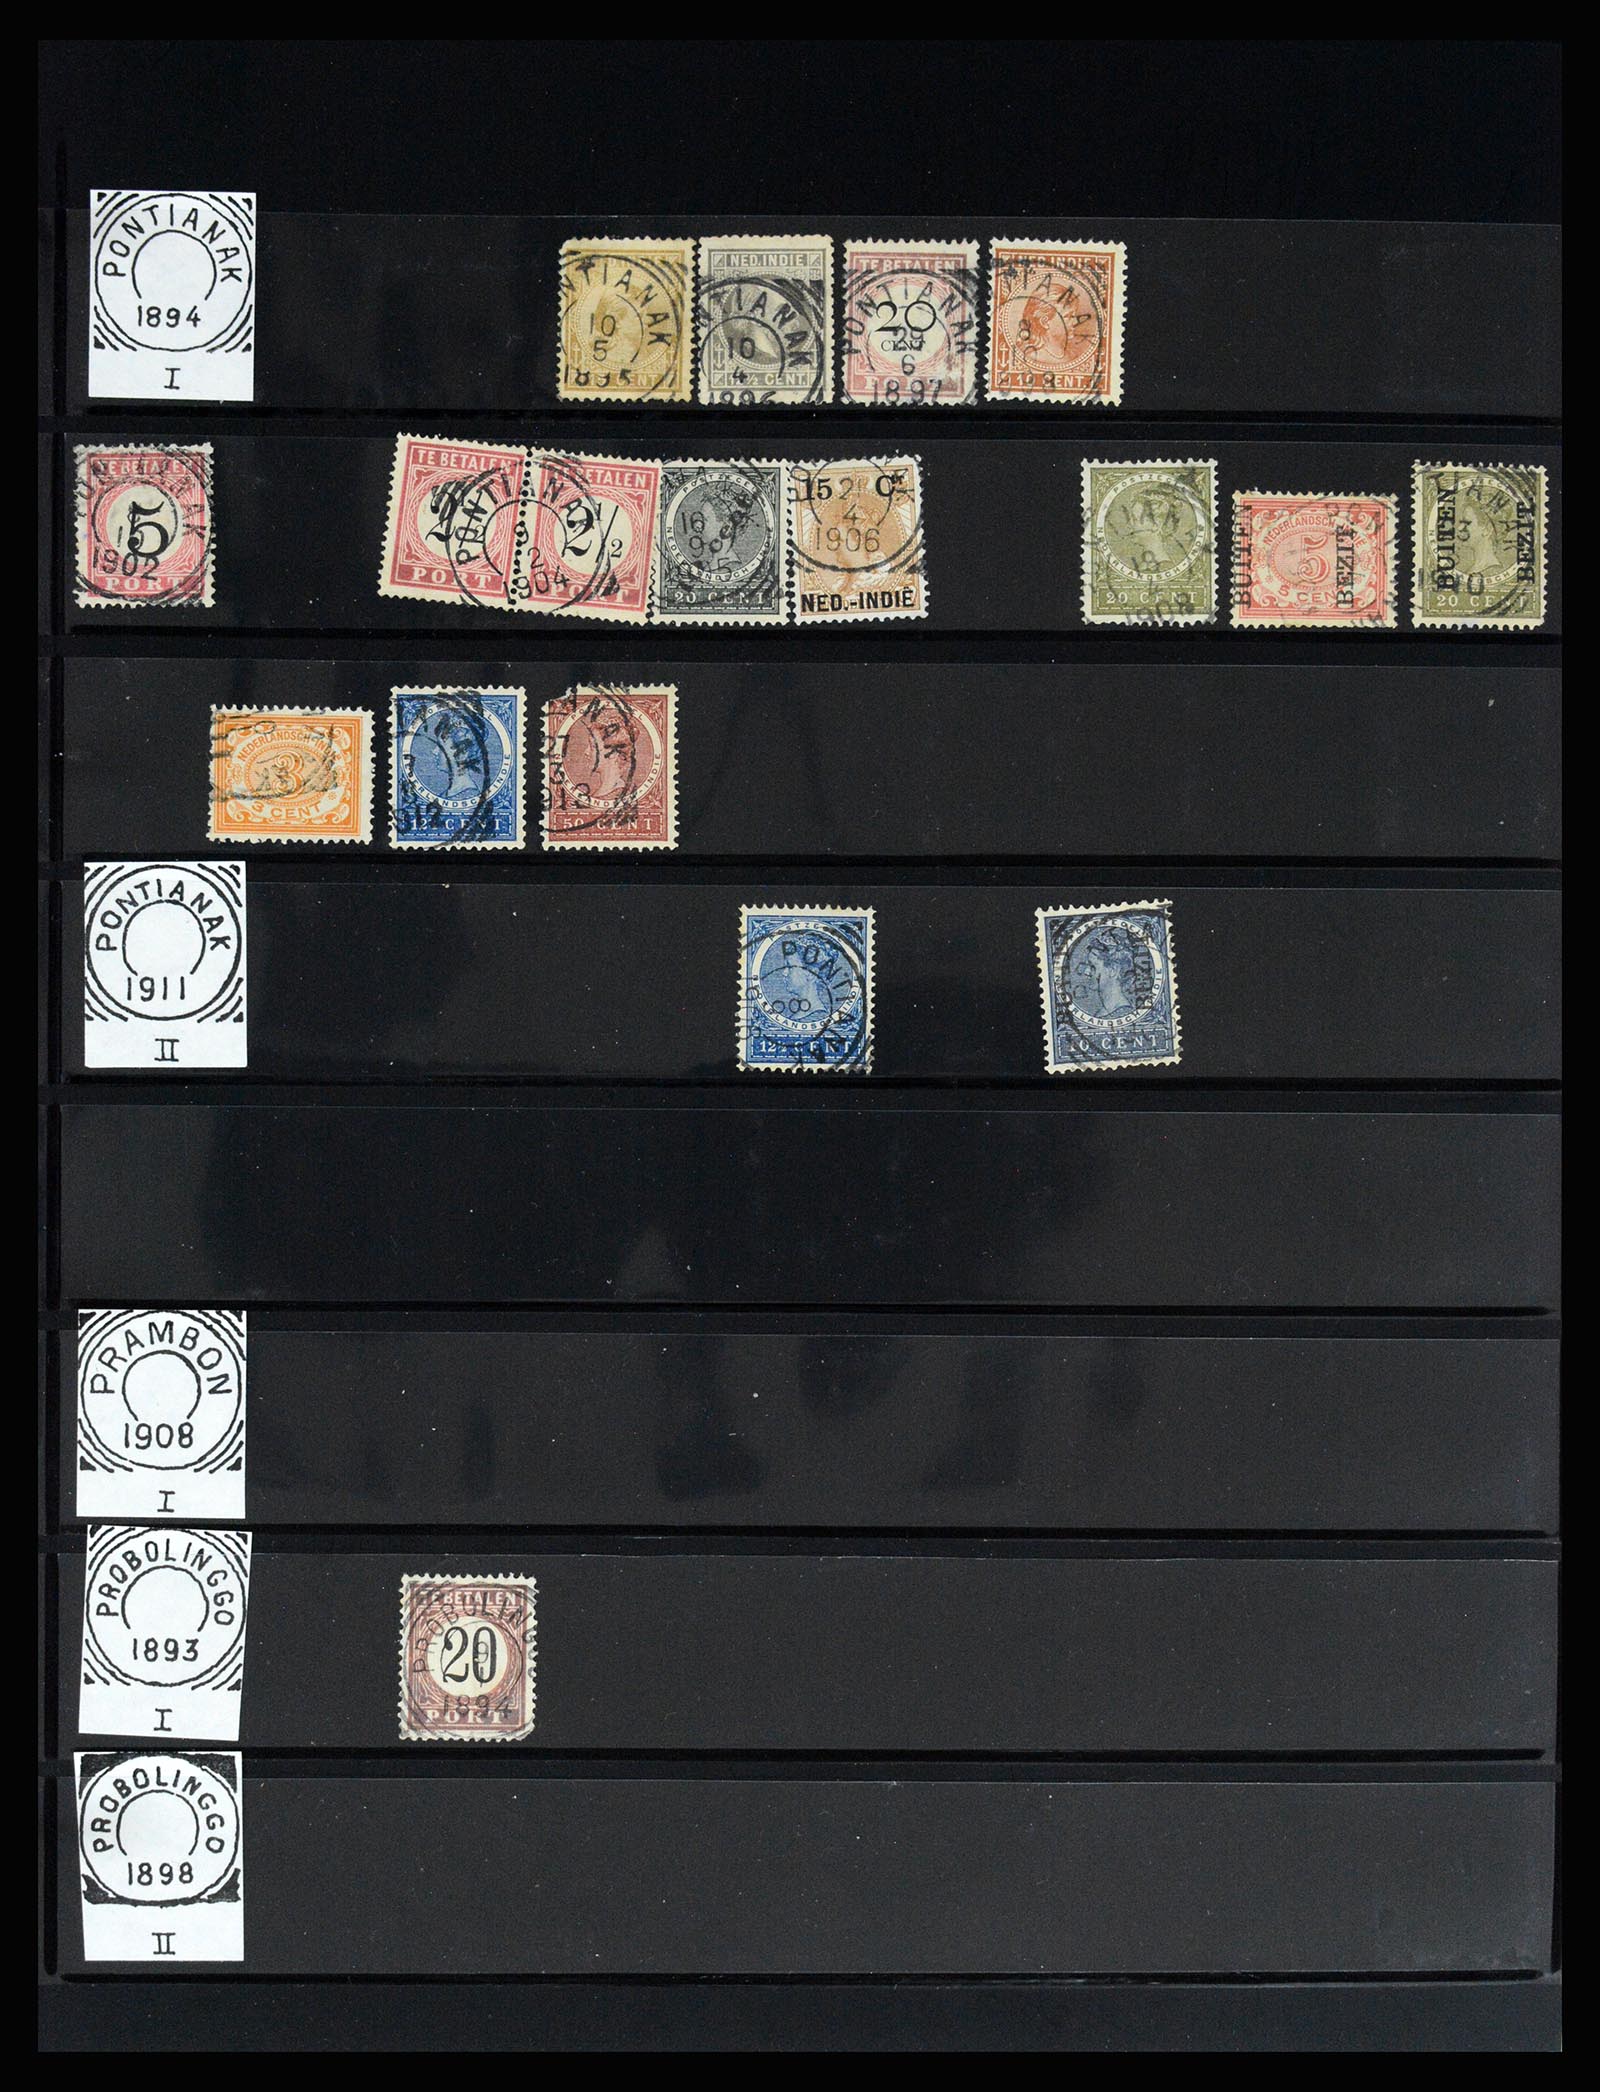 36512 140 - Stamp collection 36512 Nederlands Indië stempels 1872-1930.